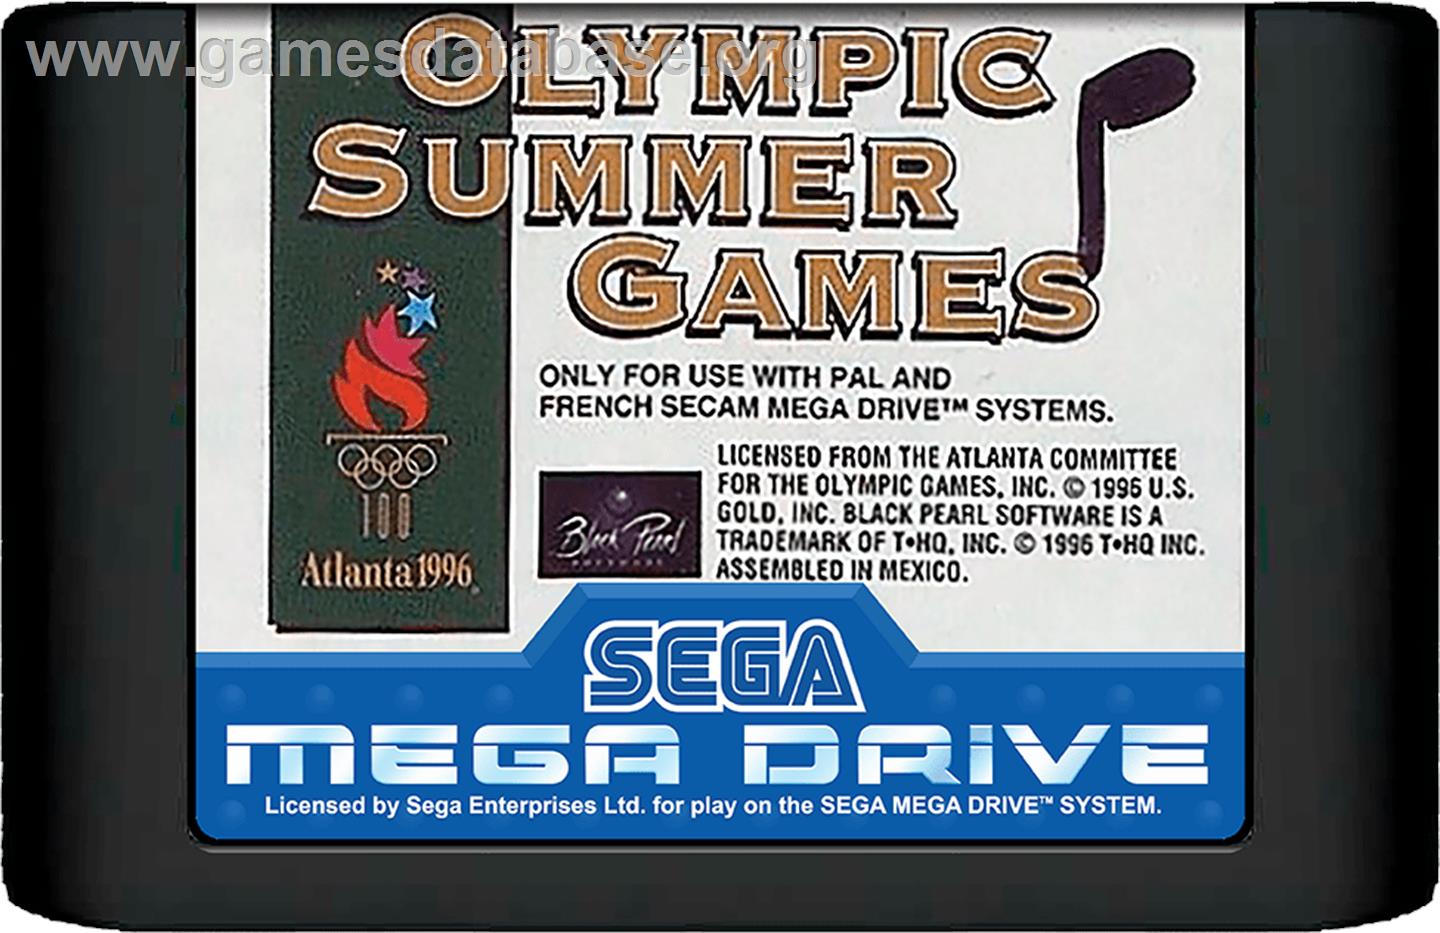 Olympic Summer Games - Sega Genesis - Artwork - Cartridge